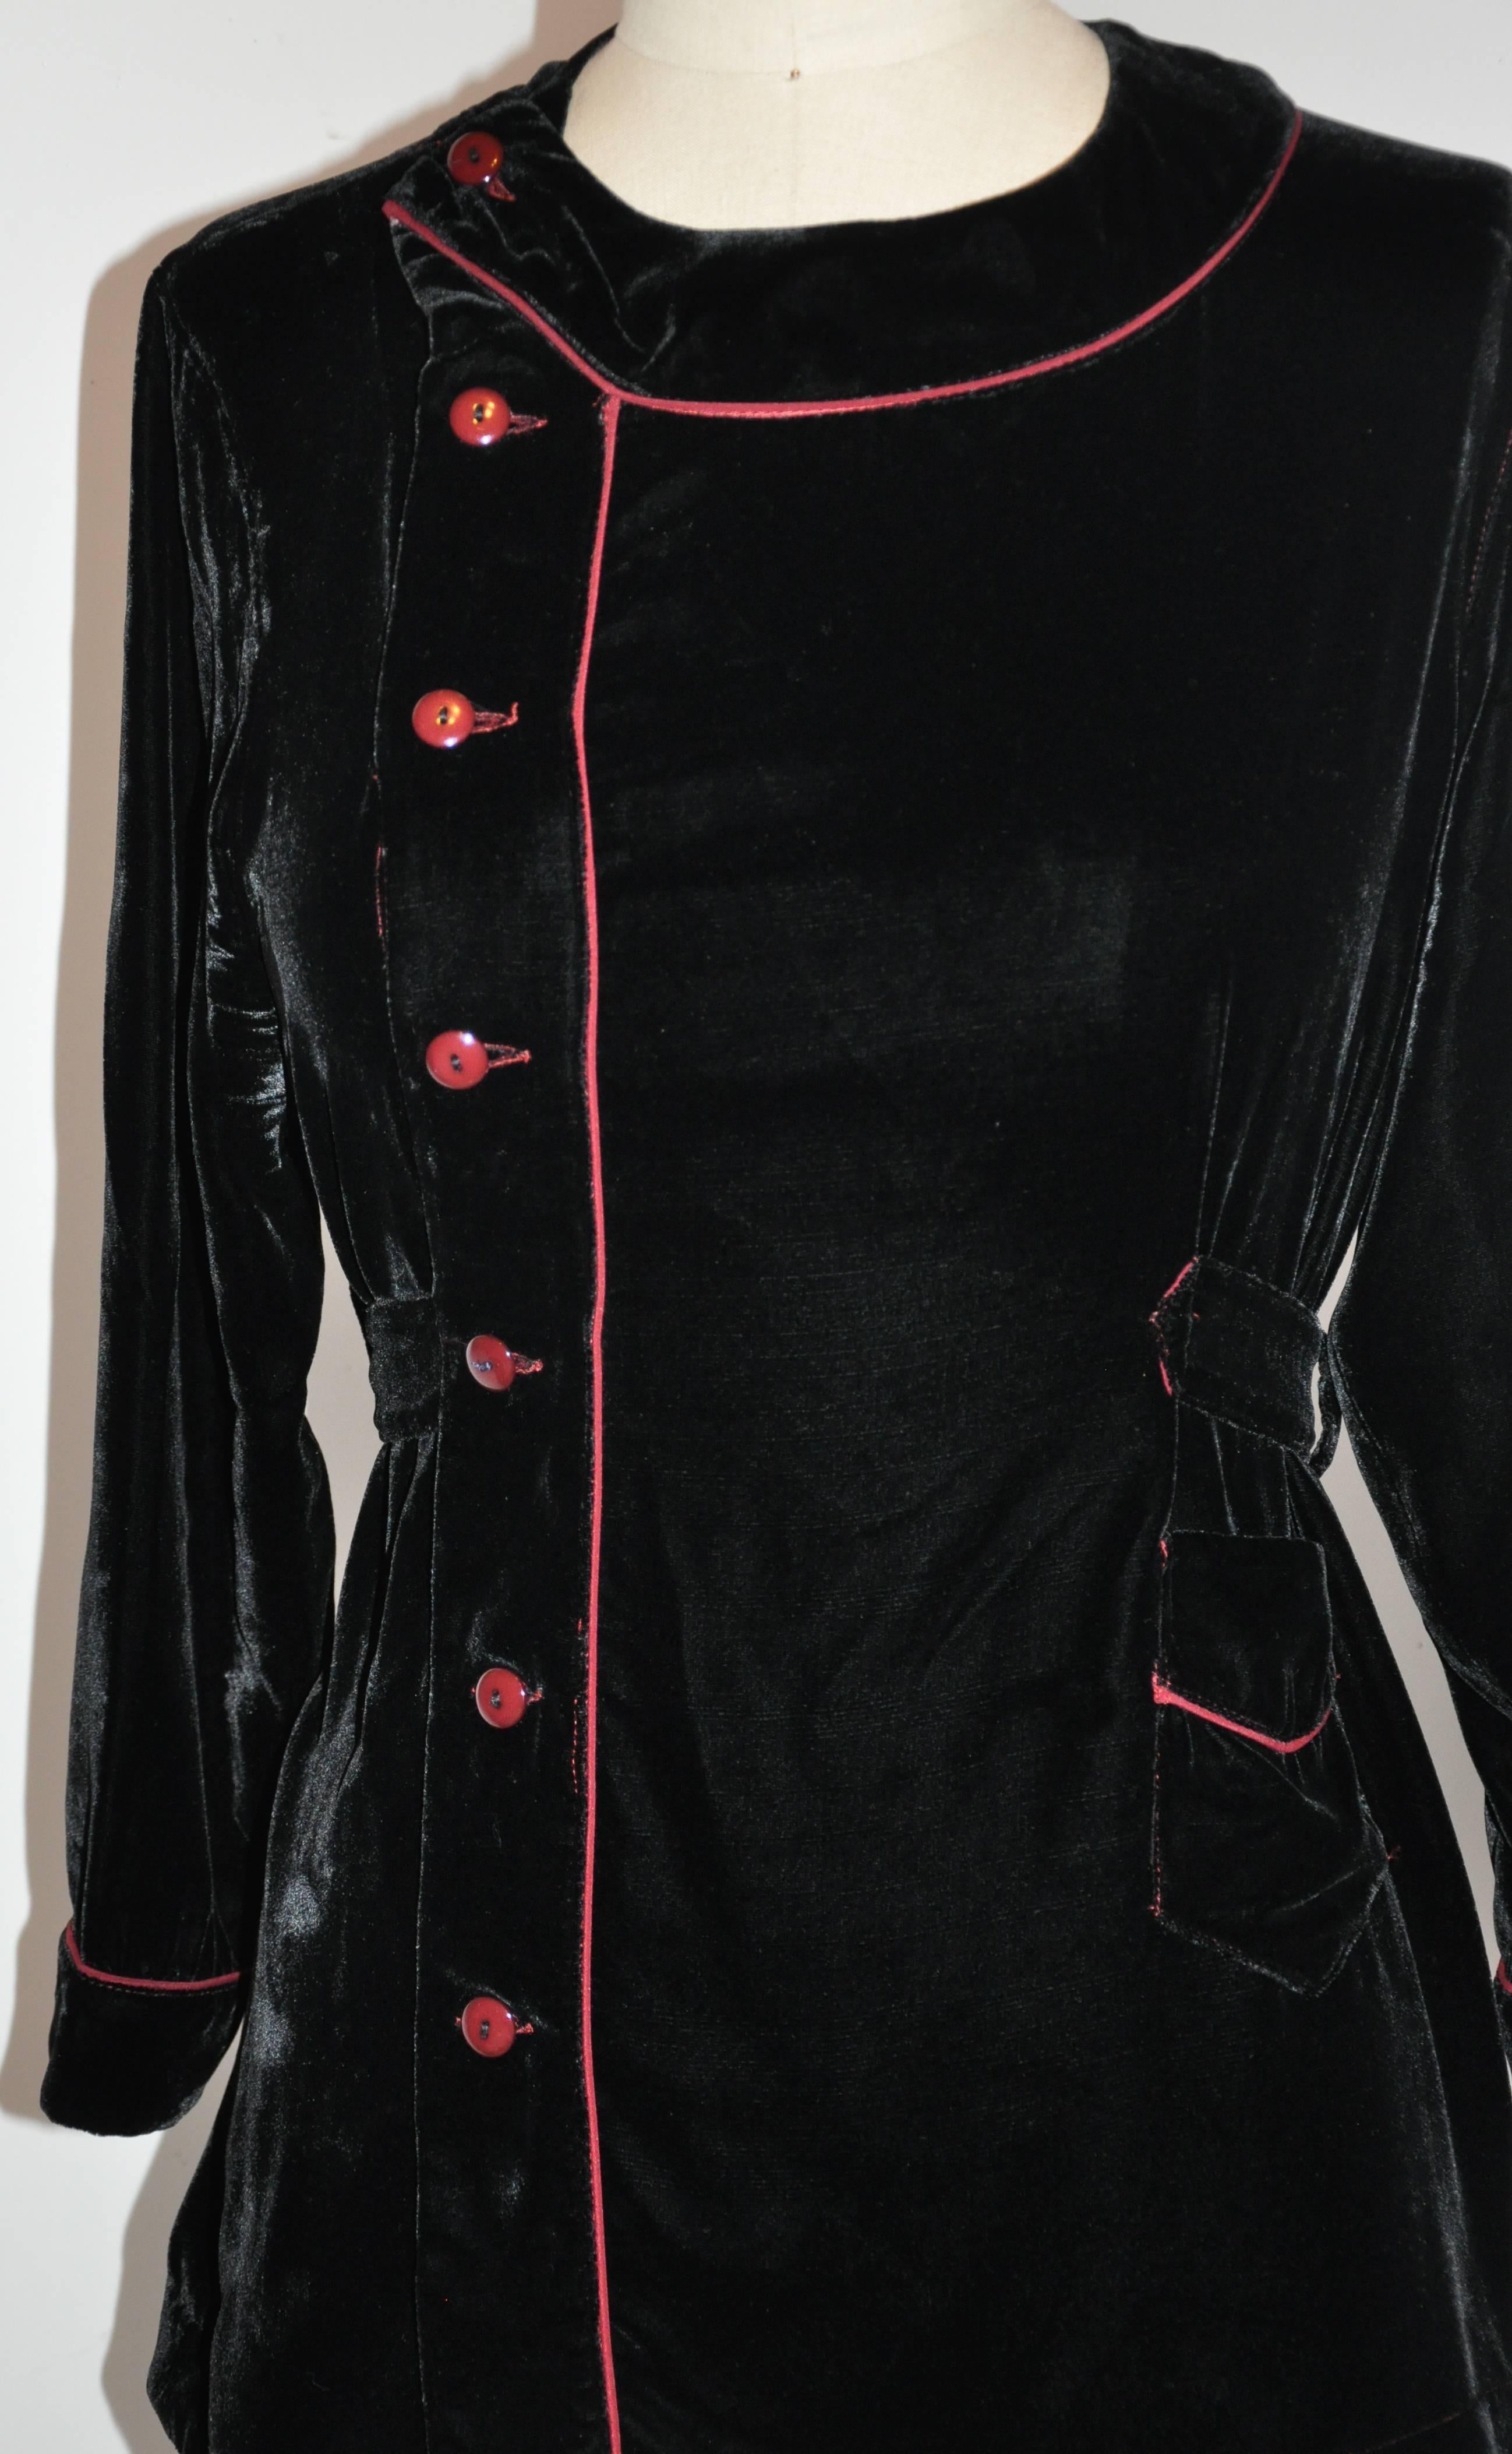         Le haut en velours noir Jean Paul Gaultier est agrémenté d'un passepoil en soie bordeaux et de boutons assortis. La taille est réglable grâce à trois boutons situés de part et d'autre du dos. Le devant comporte quatre boutons ainsi qu'une